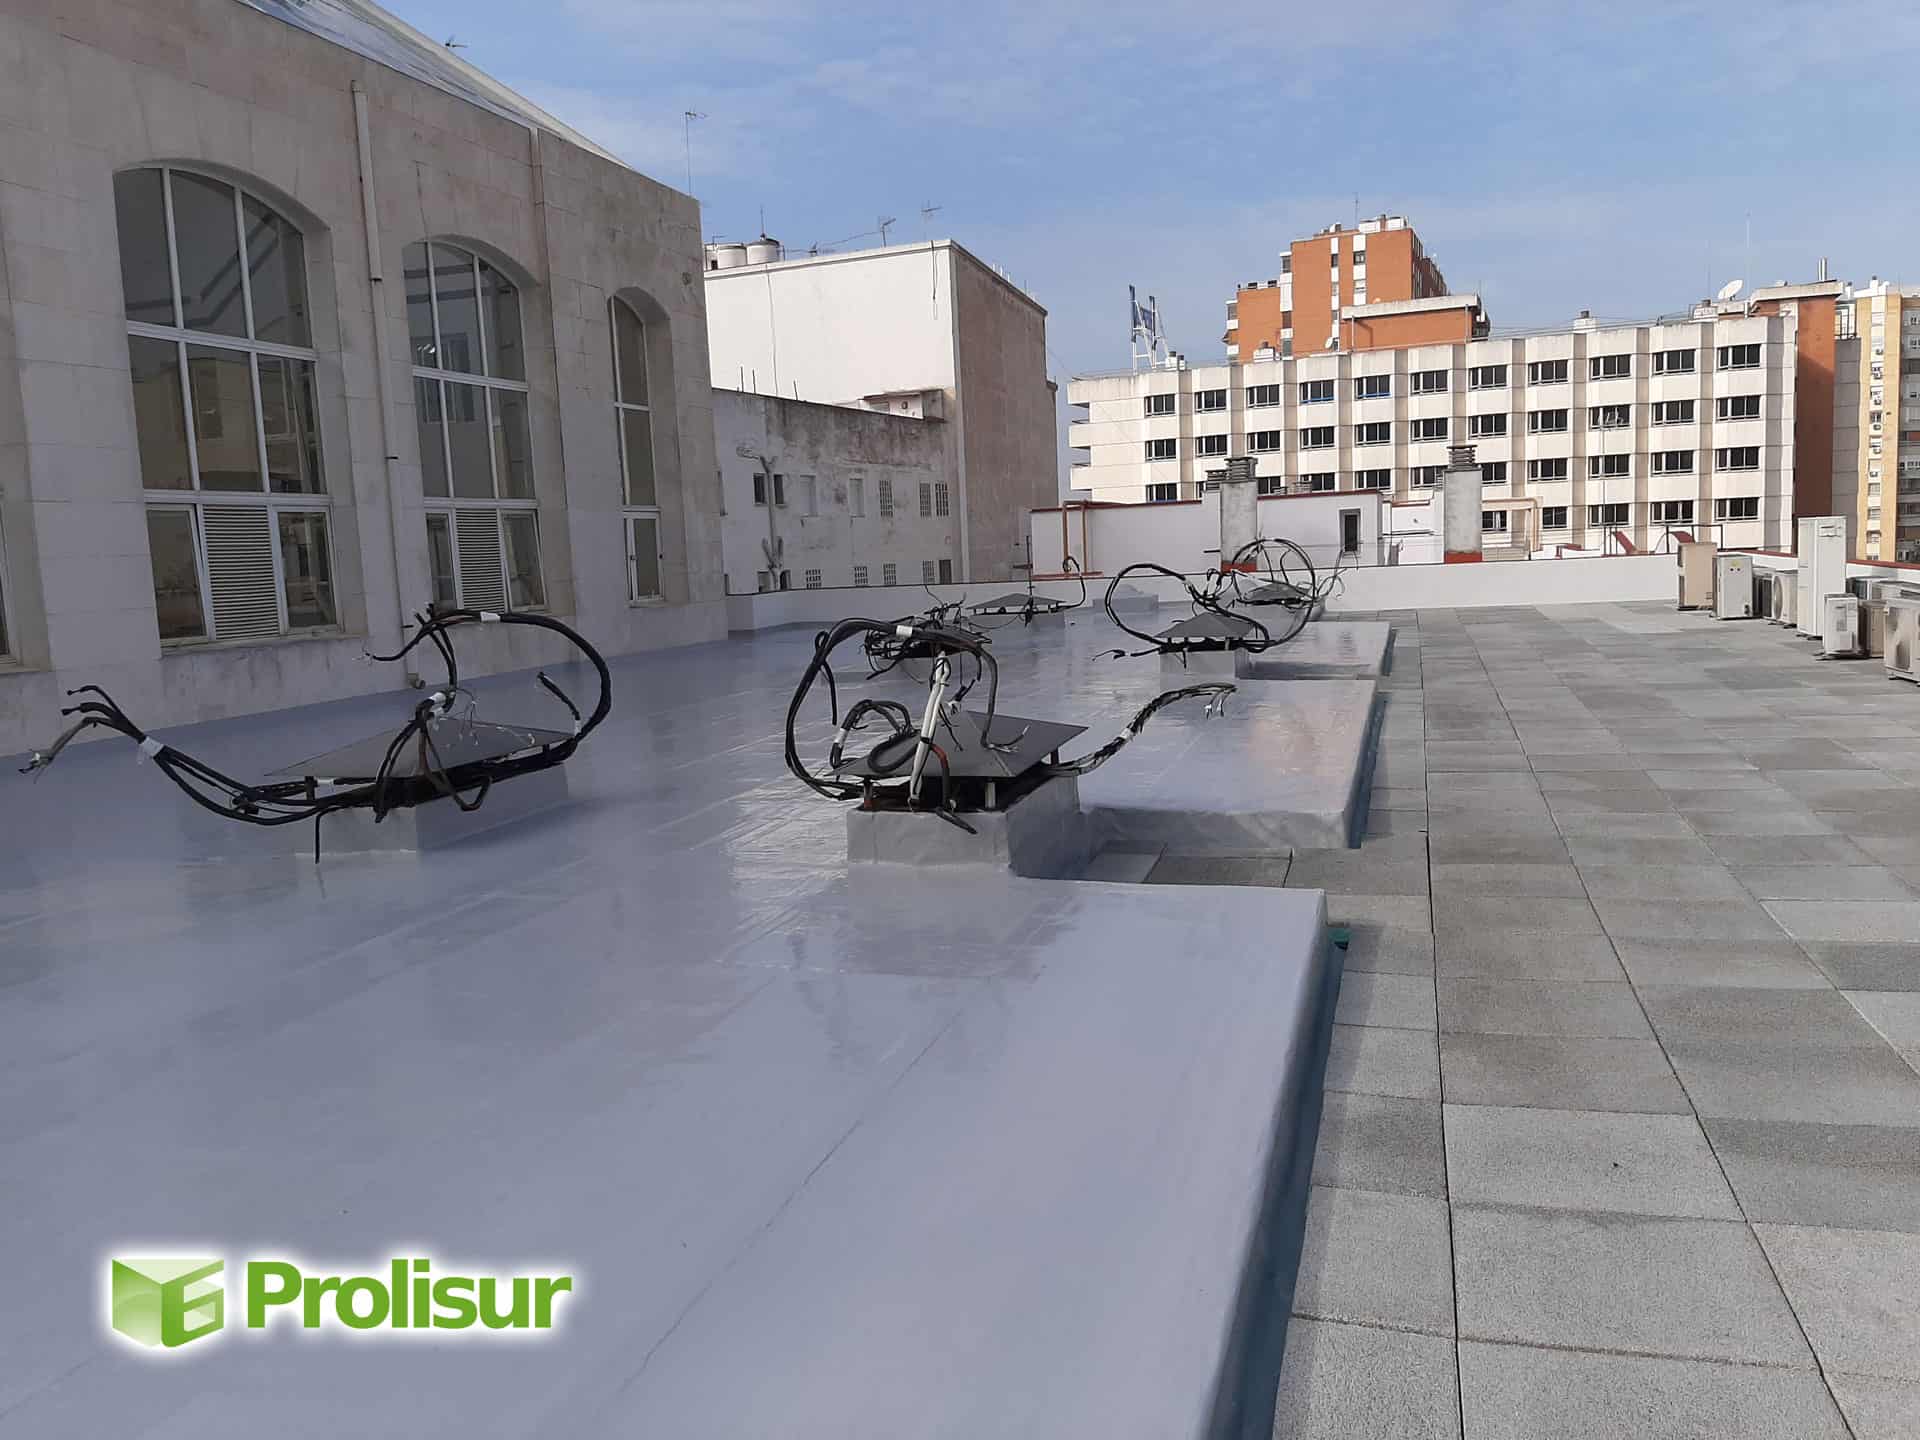 Impermeabilización y aislamiento térmico en cubiertas del Edificio Forum en Sevilla